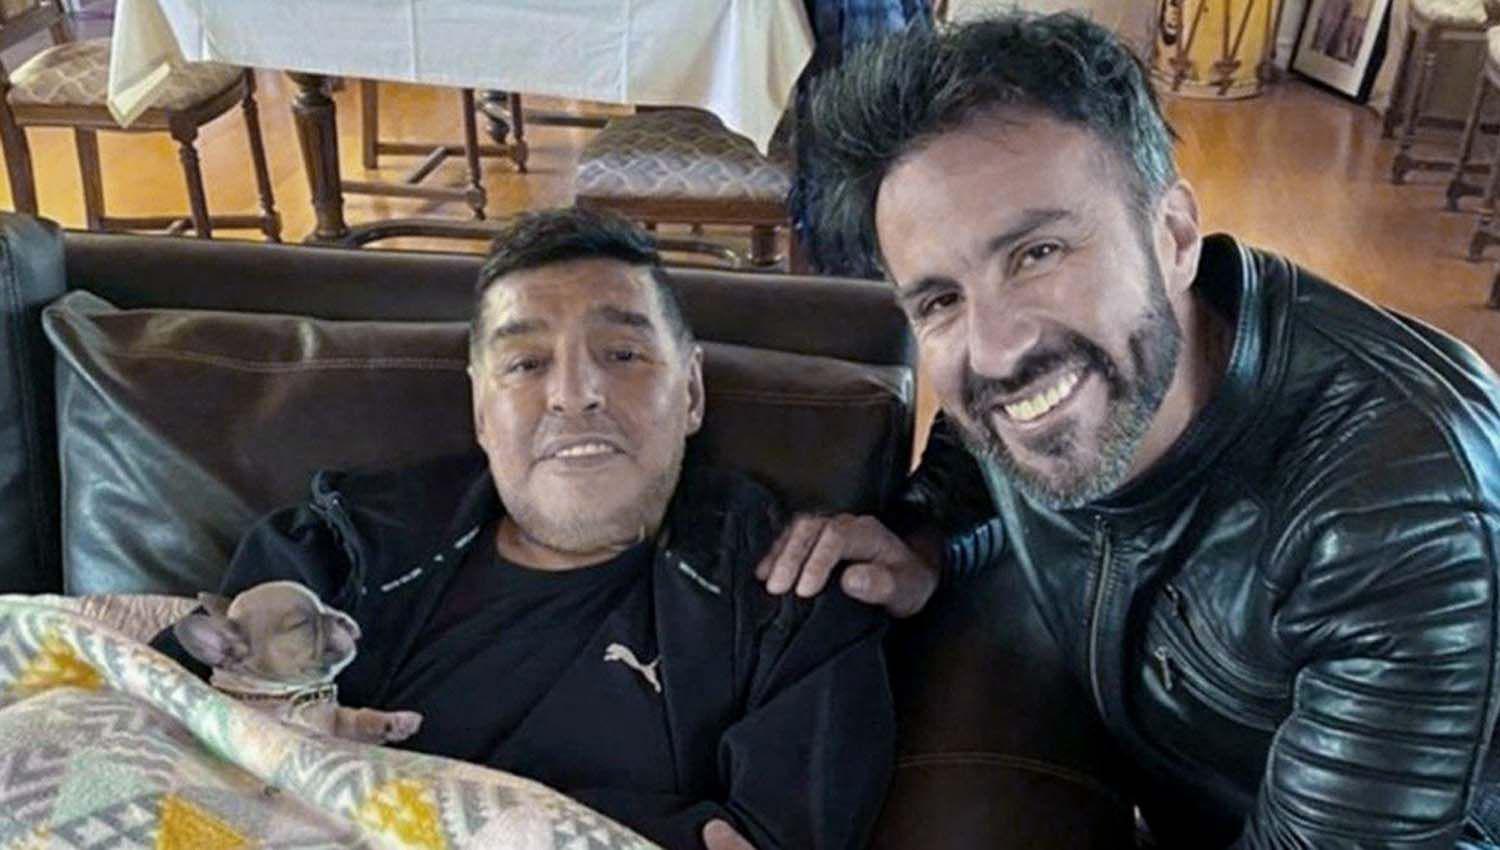 Empieza la junta meacutedica clave en la causa por la muerte de Maradona